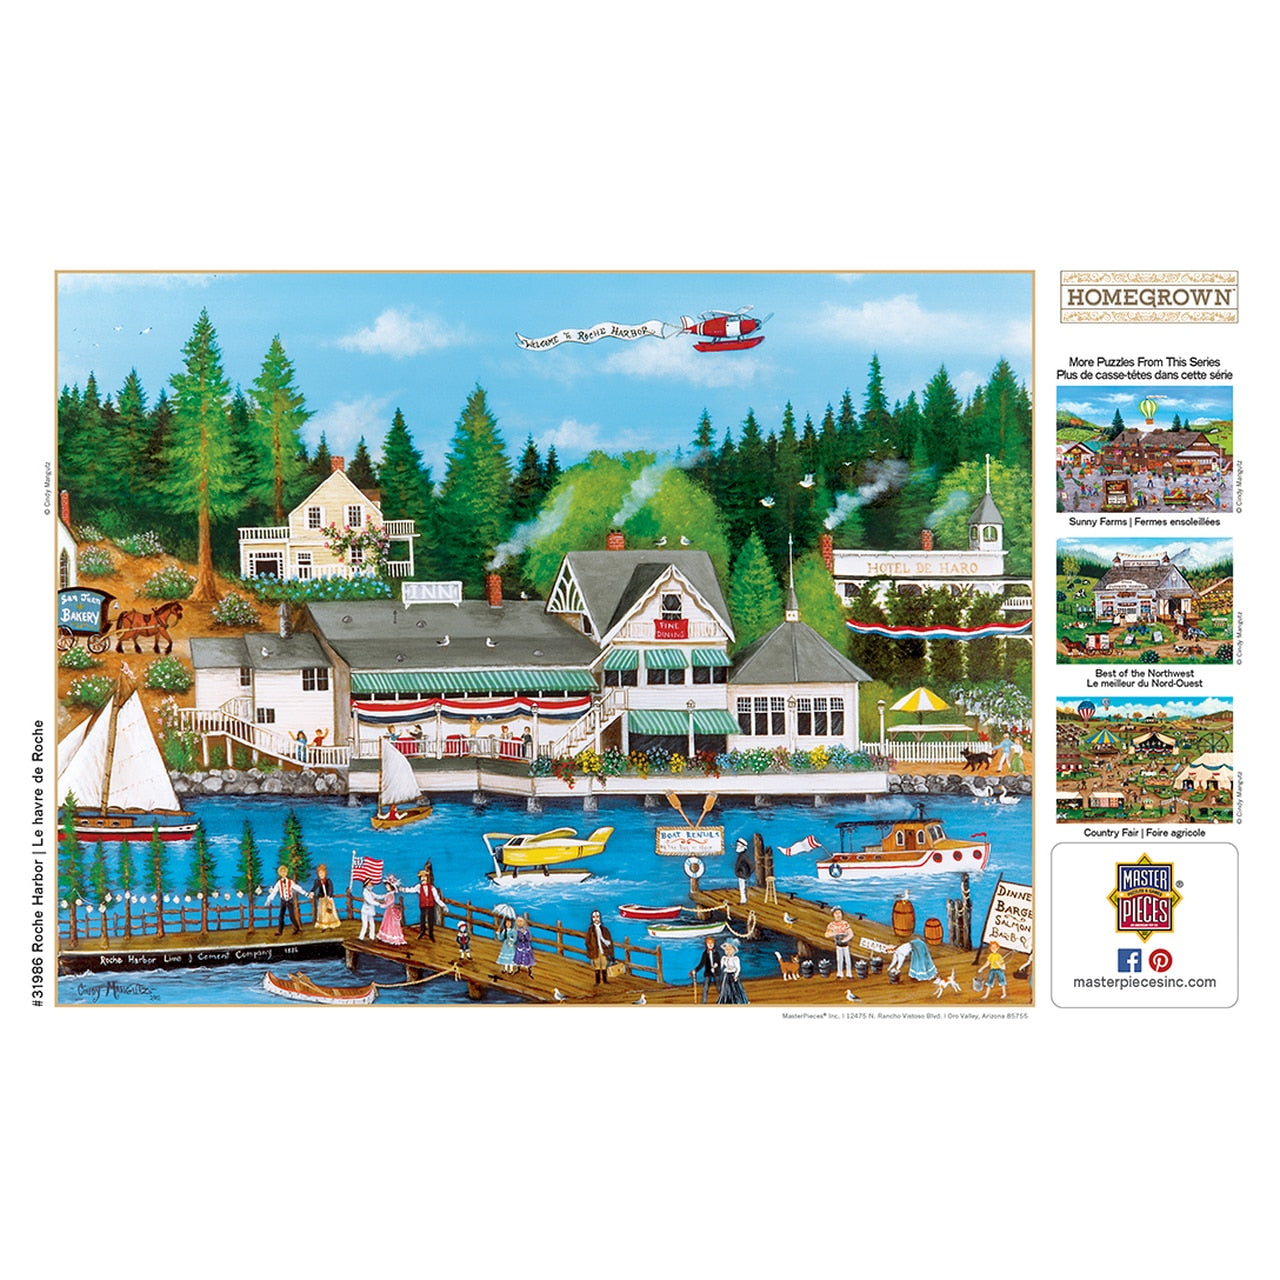 Roche Harbor 750 Piece Puzzle    